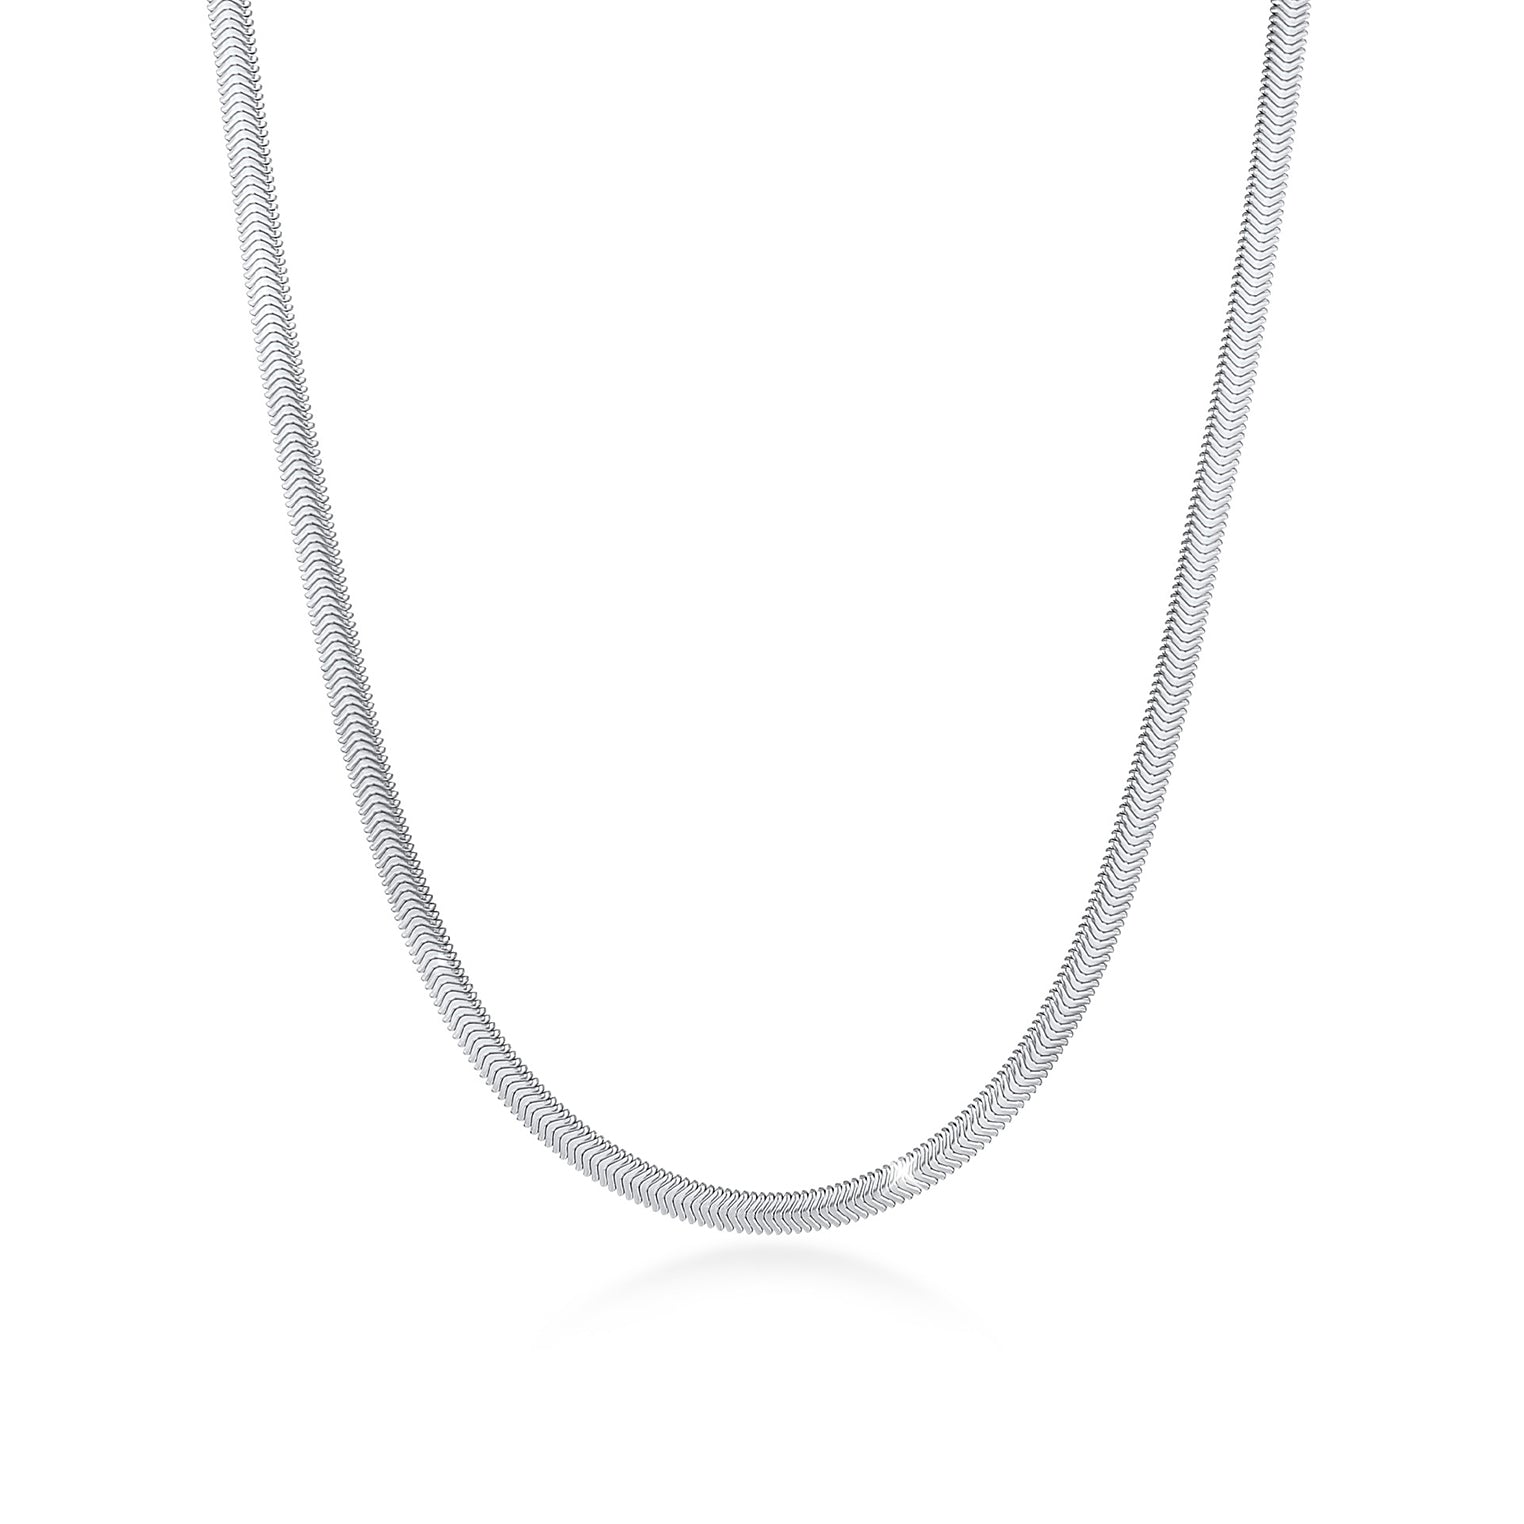 Hochwertig, handgefertige Halsketten | bei Elli bestellen – Elli Jewelry